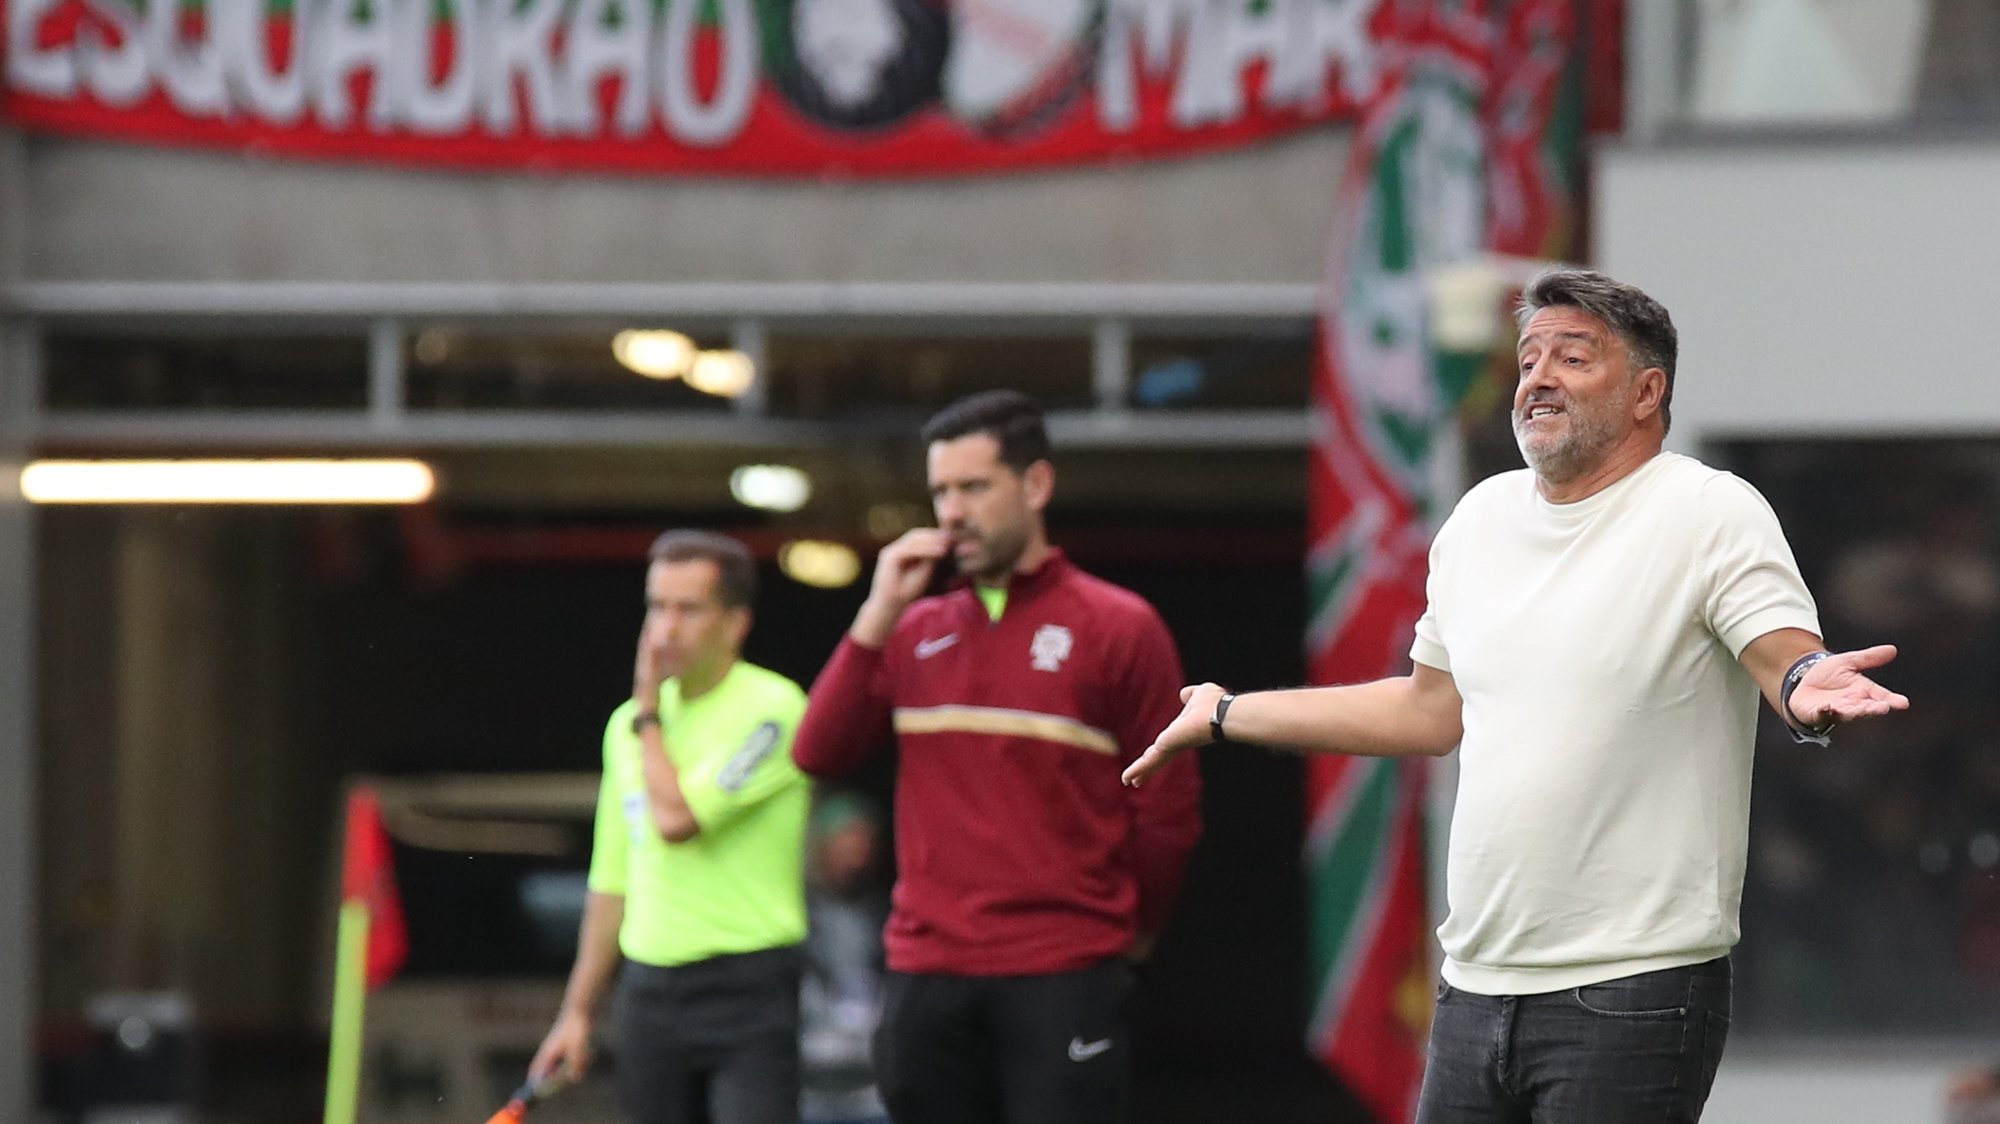 Manuel Cruz (Tulipa) treinador do Vizela durante o encontro frente ao Marítimo  jogo da Primeira Liga de Futebol realizado no Estádio do Marítimo, no Funchal, 19 de maio de 2023. HOMEM DE GOUVEIA/LUSA